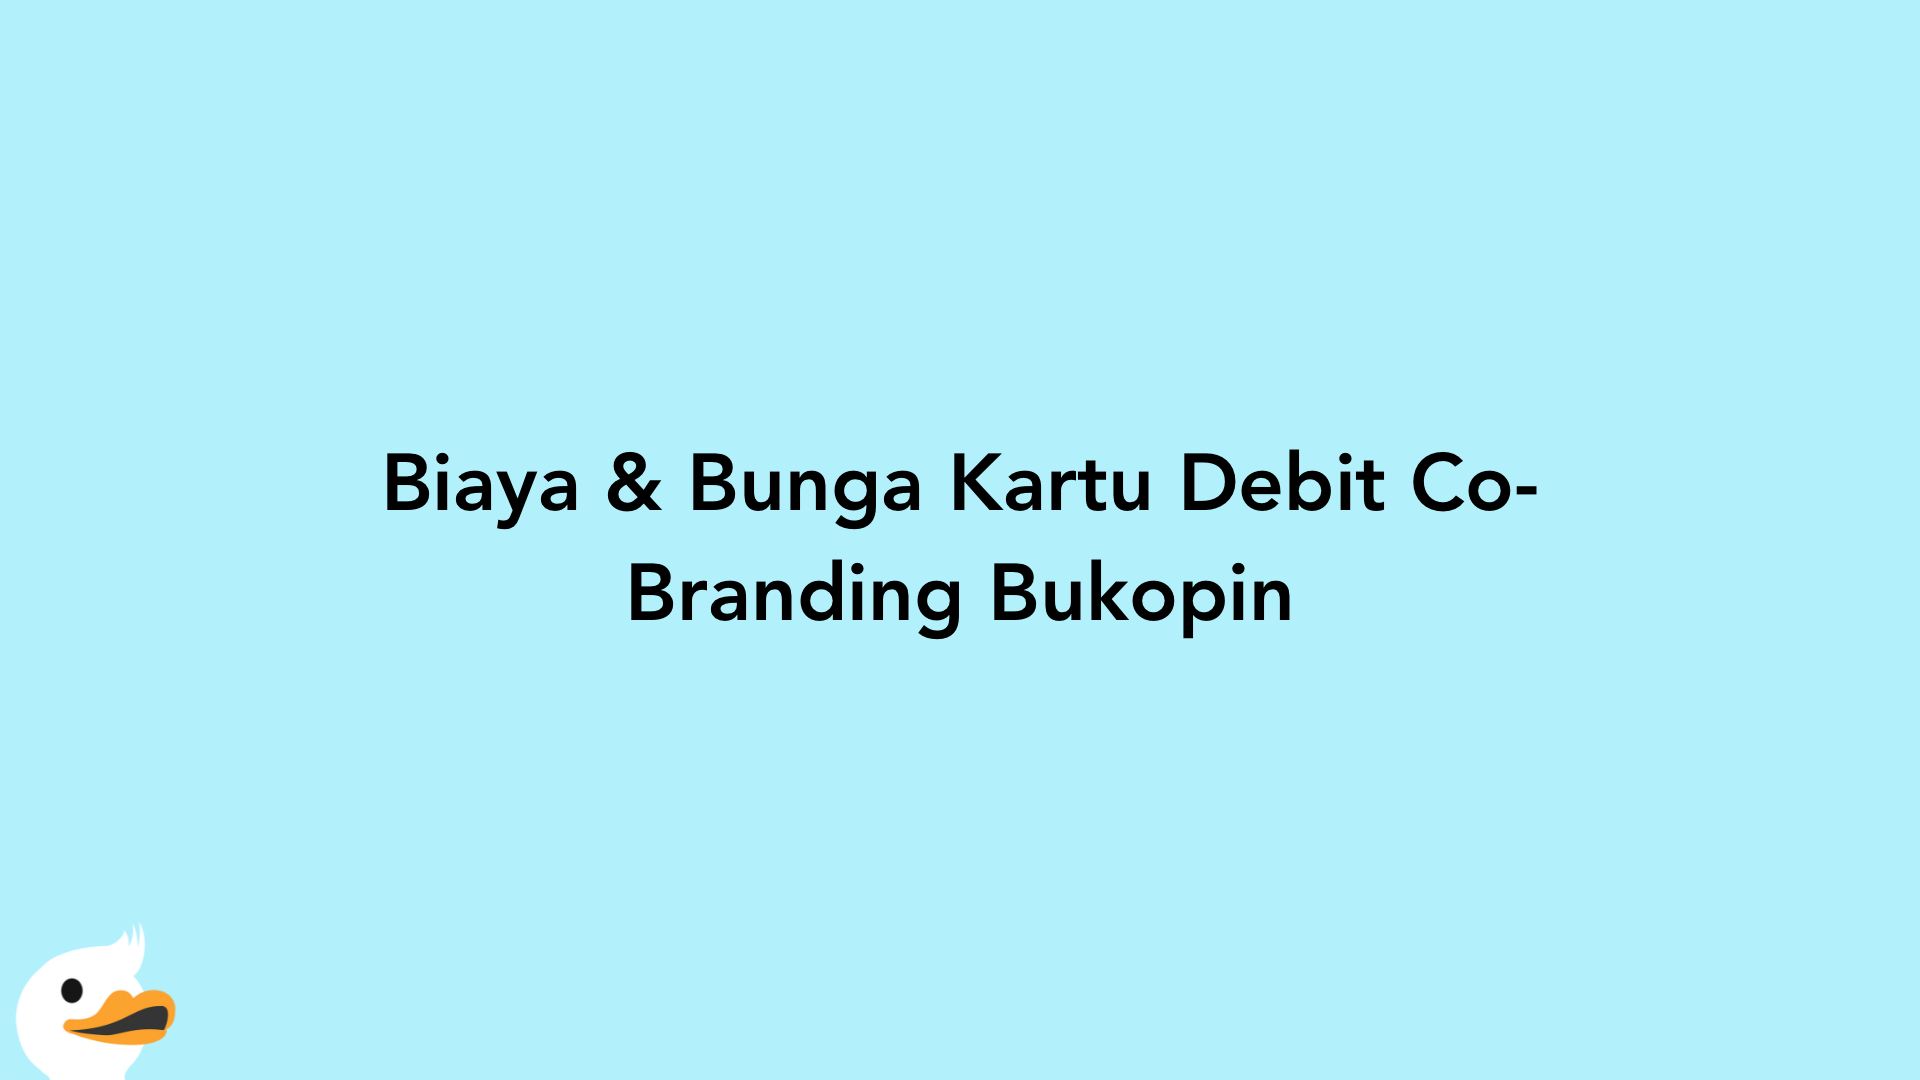 Biaya & Bunga Kartu Debit Co-Branding Bukopin